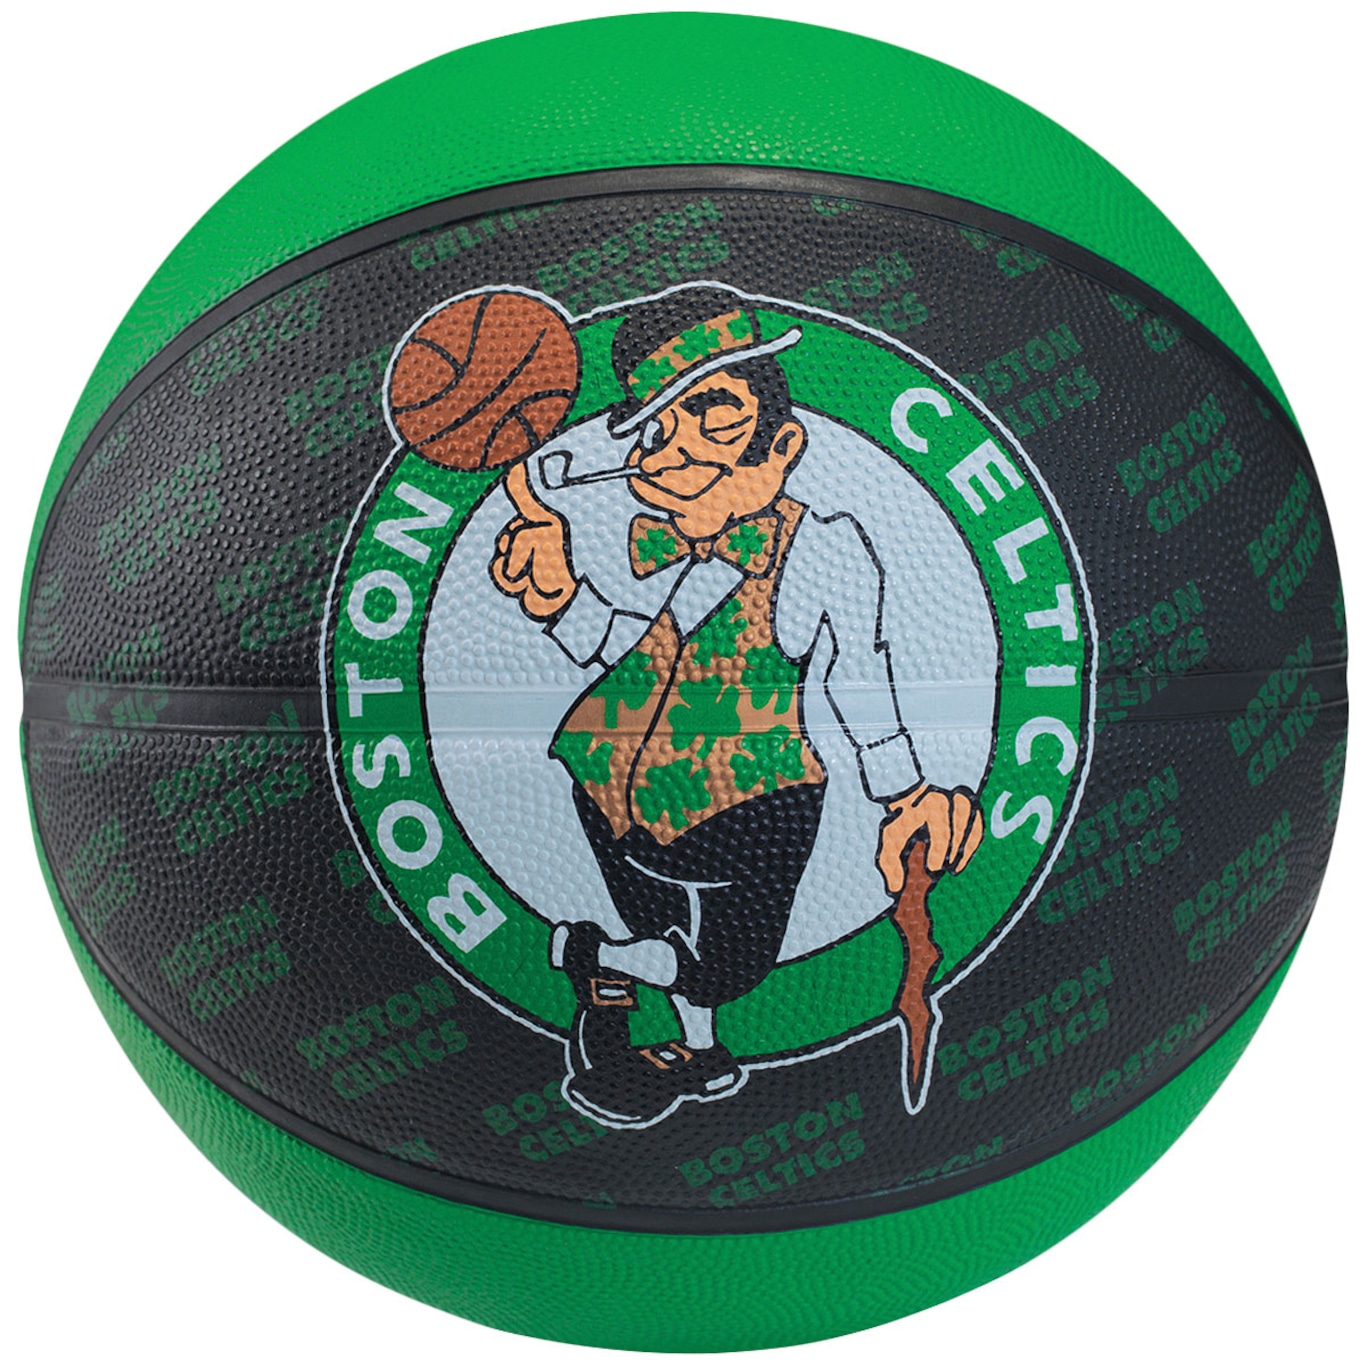 Spalding Bola Basquete TIME NBA Borracha - Boston Celtics